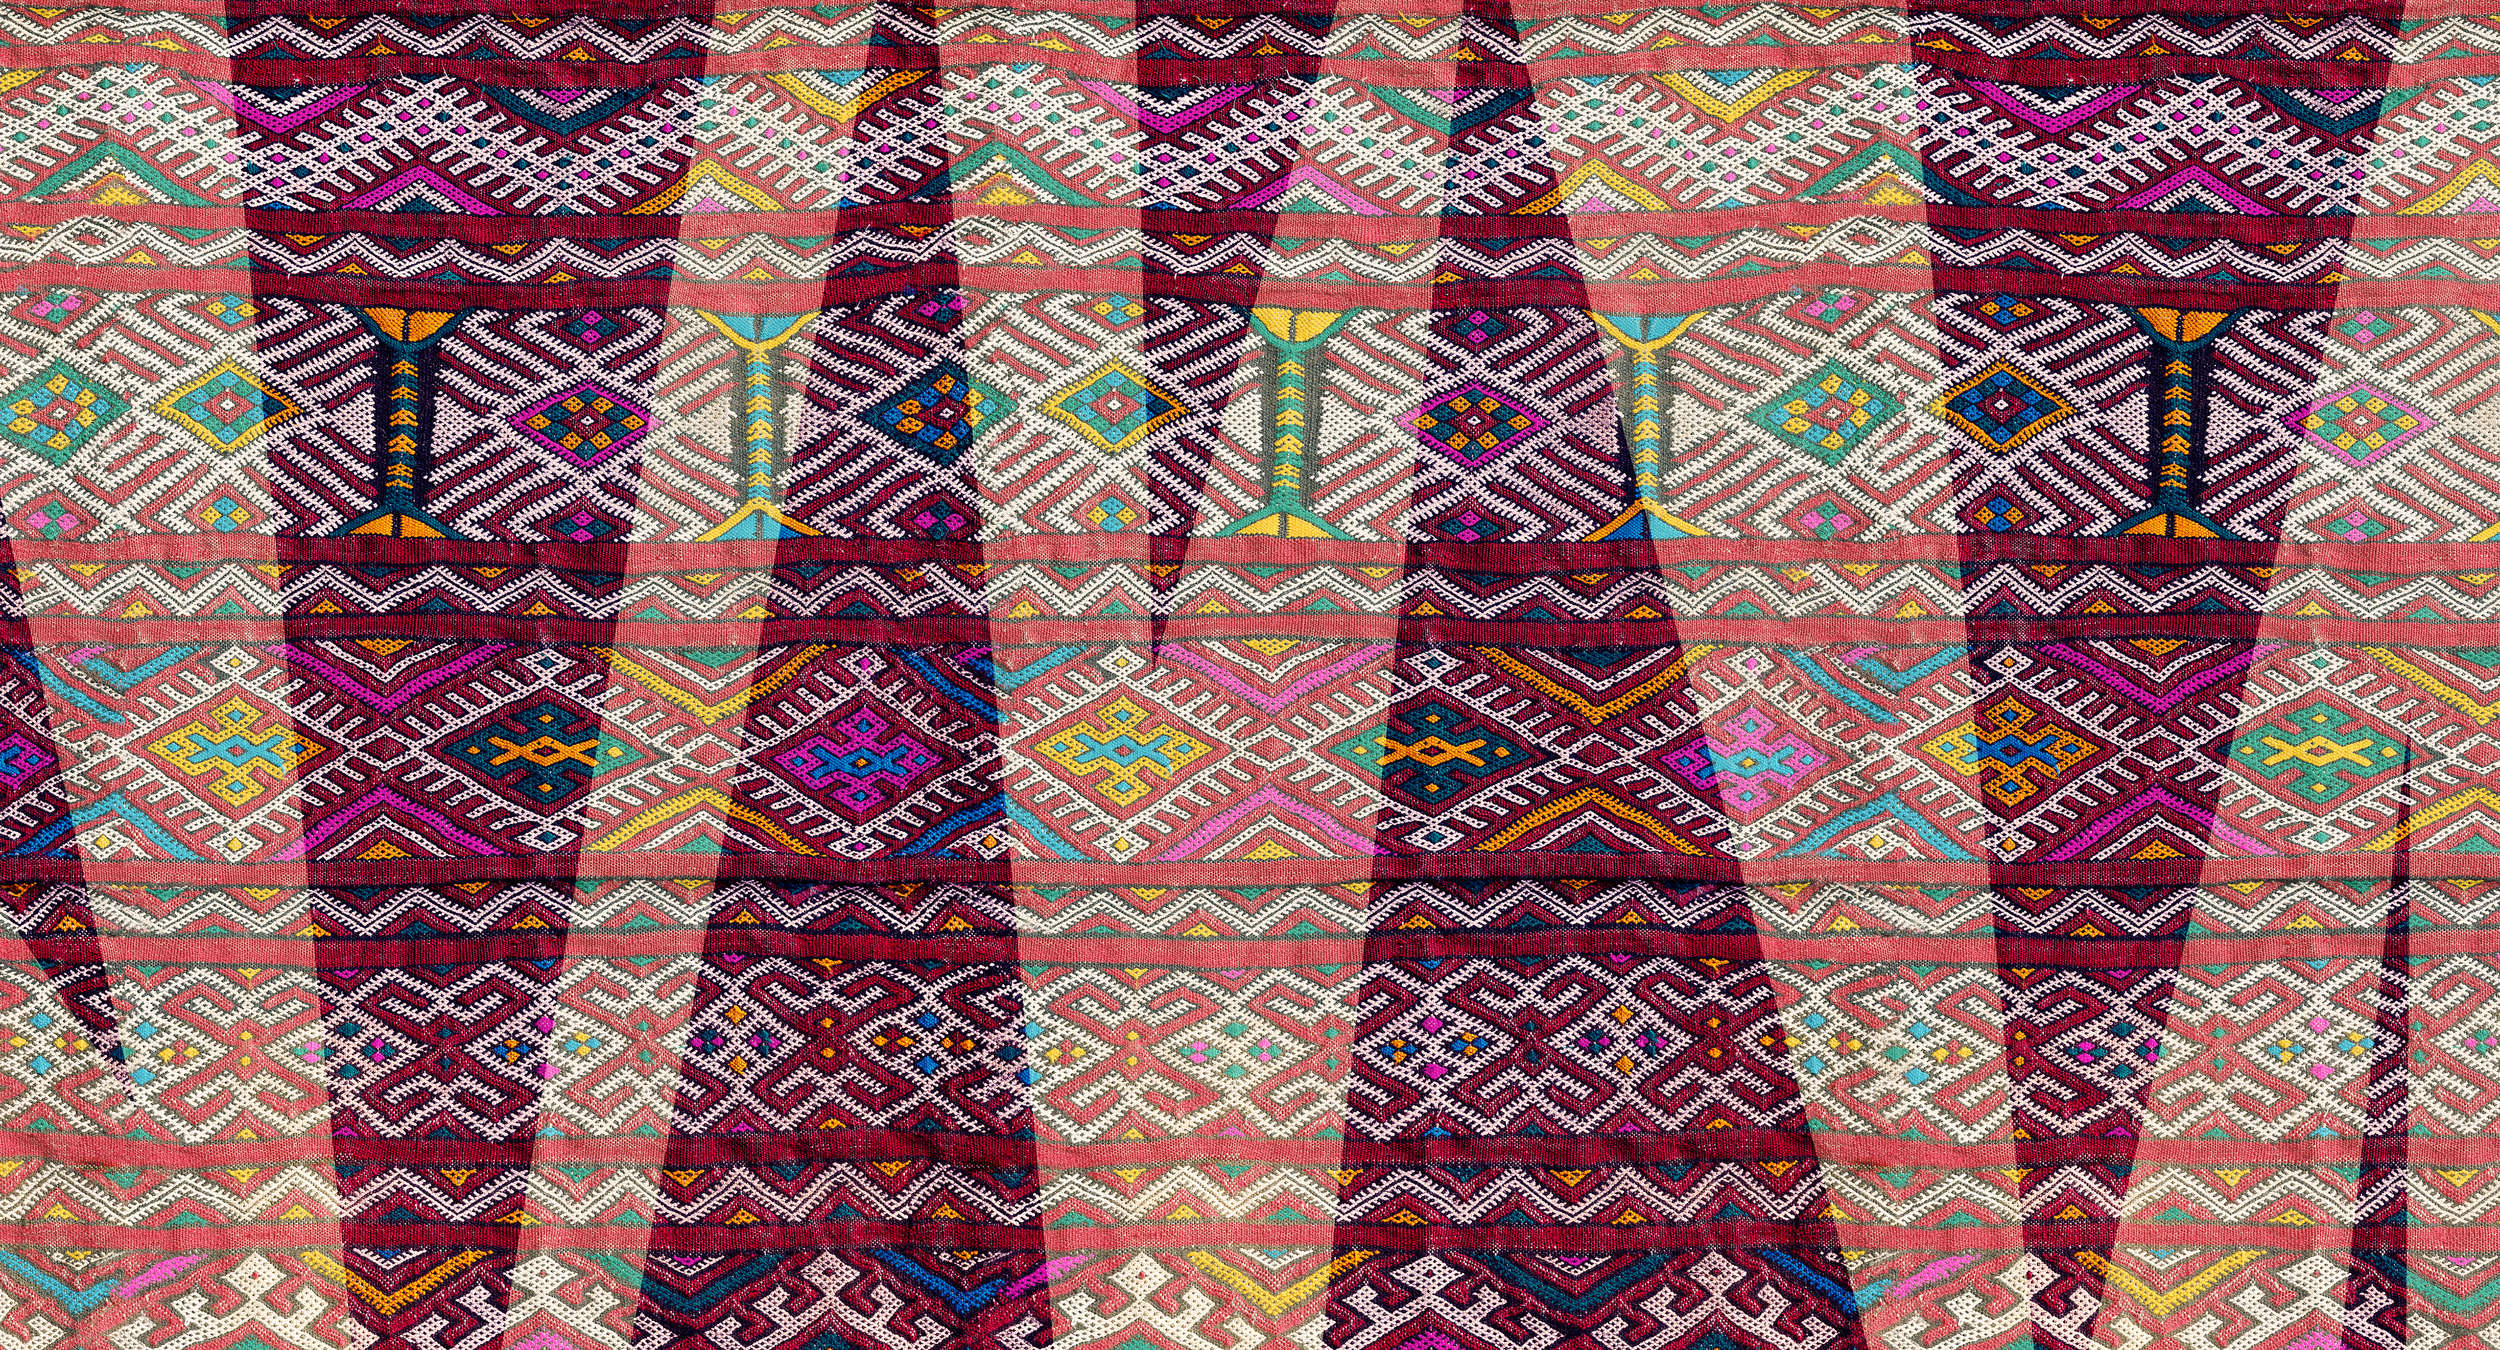             Papier peint style ethnique avec motif tissé indigène - violet, vert, orange
        